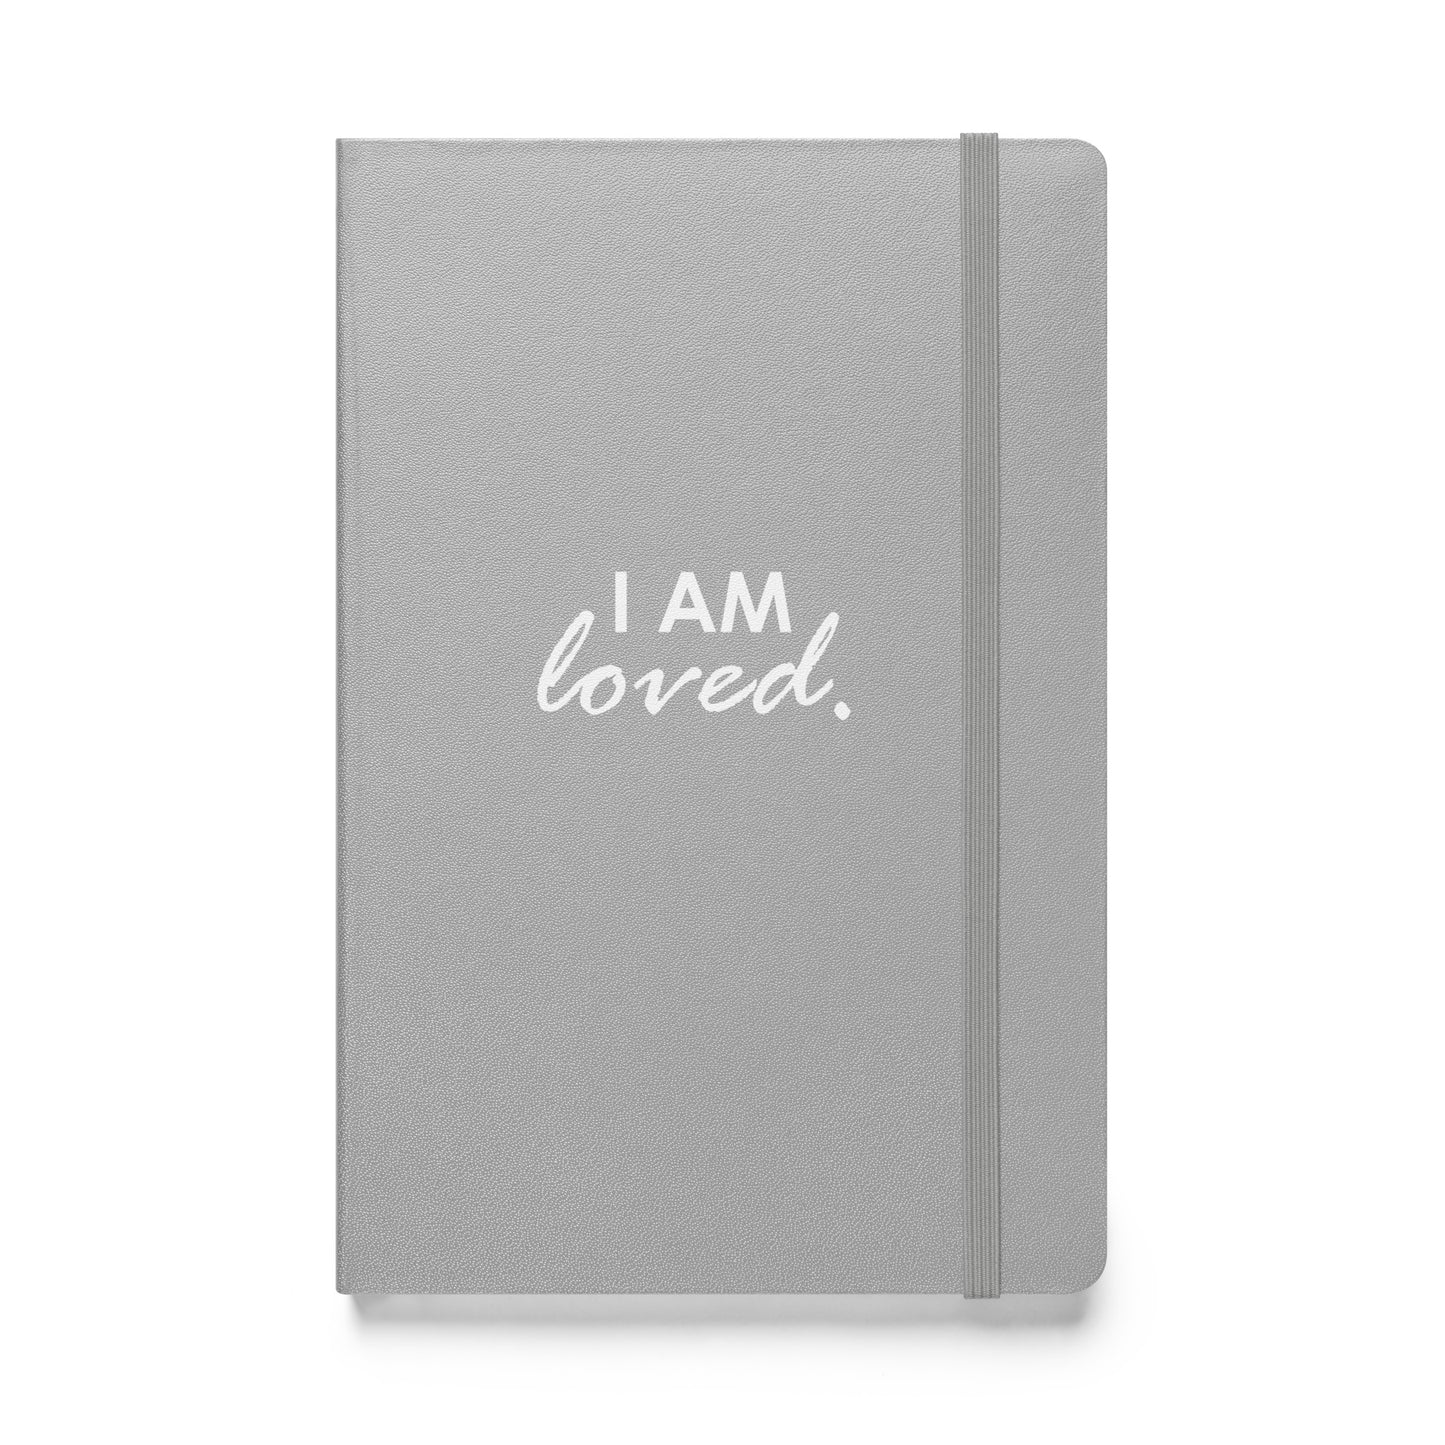 I AM LOVED - Hardcover bound notebook & FREE Affirmation Digital Download